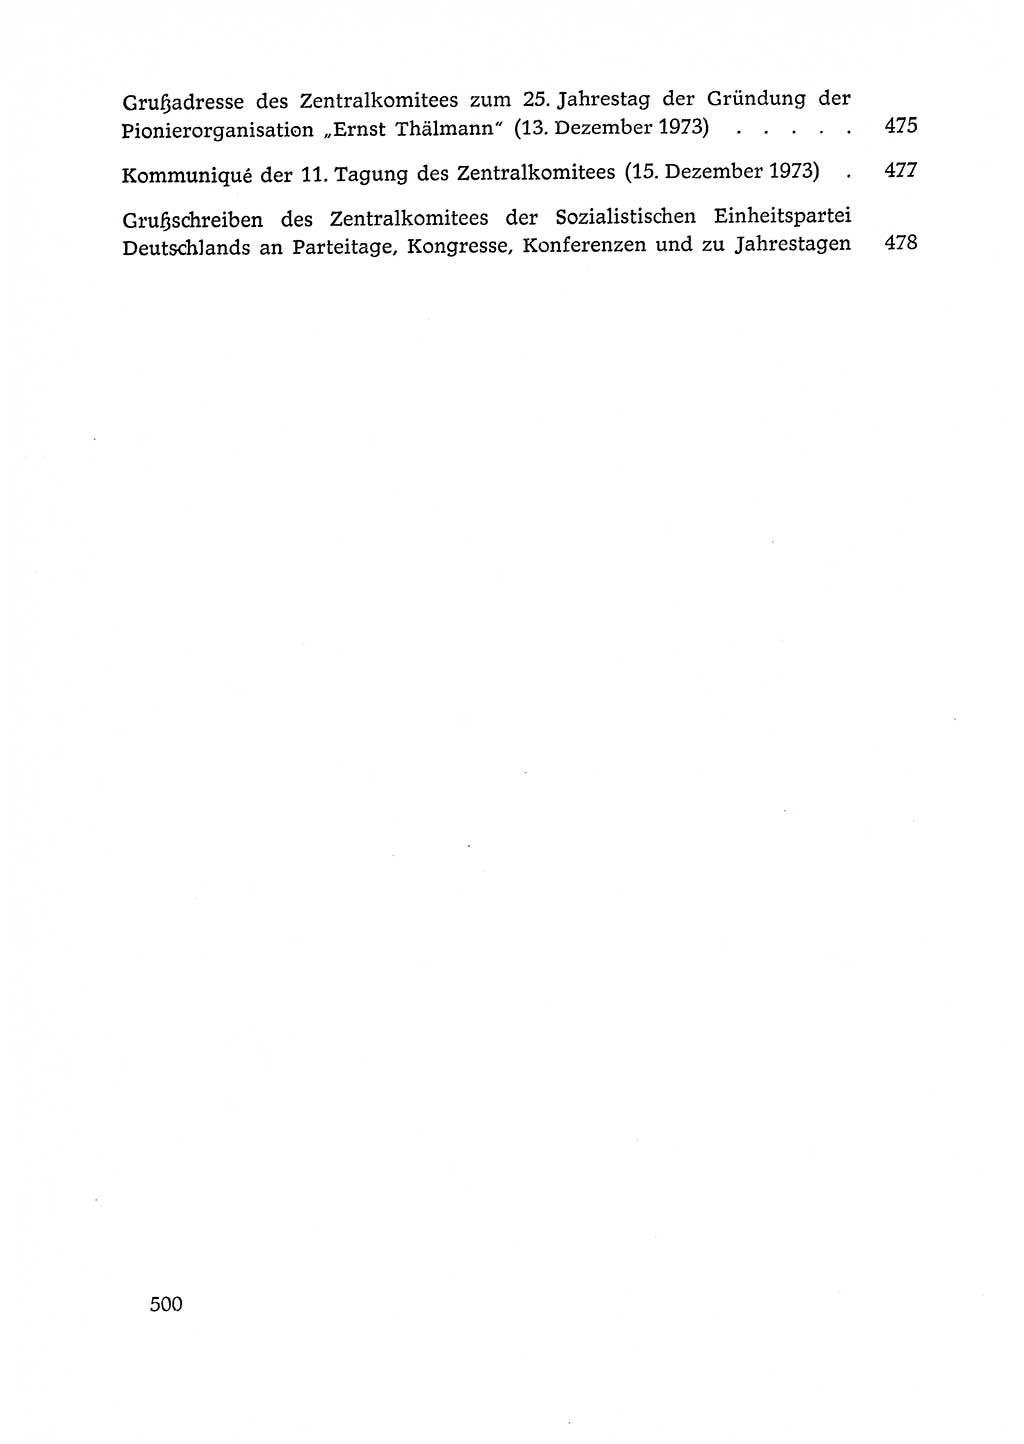 Dokumente der Sozialistischen Einheitspartei Deutschlands (SED) [Deutsche Demokratische Republik (DDR)] 1972-1973, Seite 500 (Dok. SED DDR 1972-1973, S. 500)